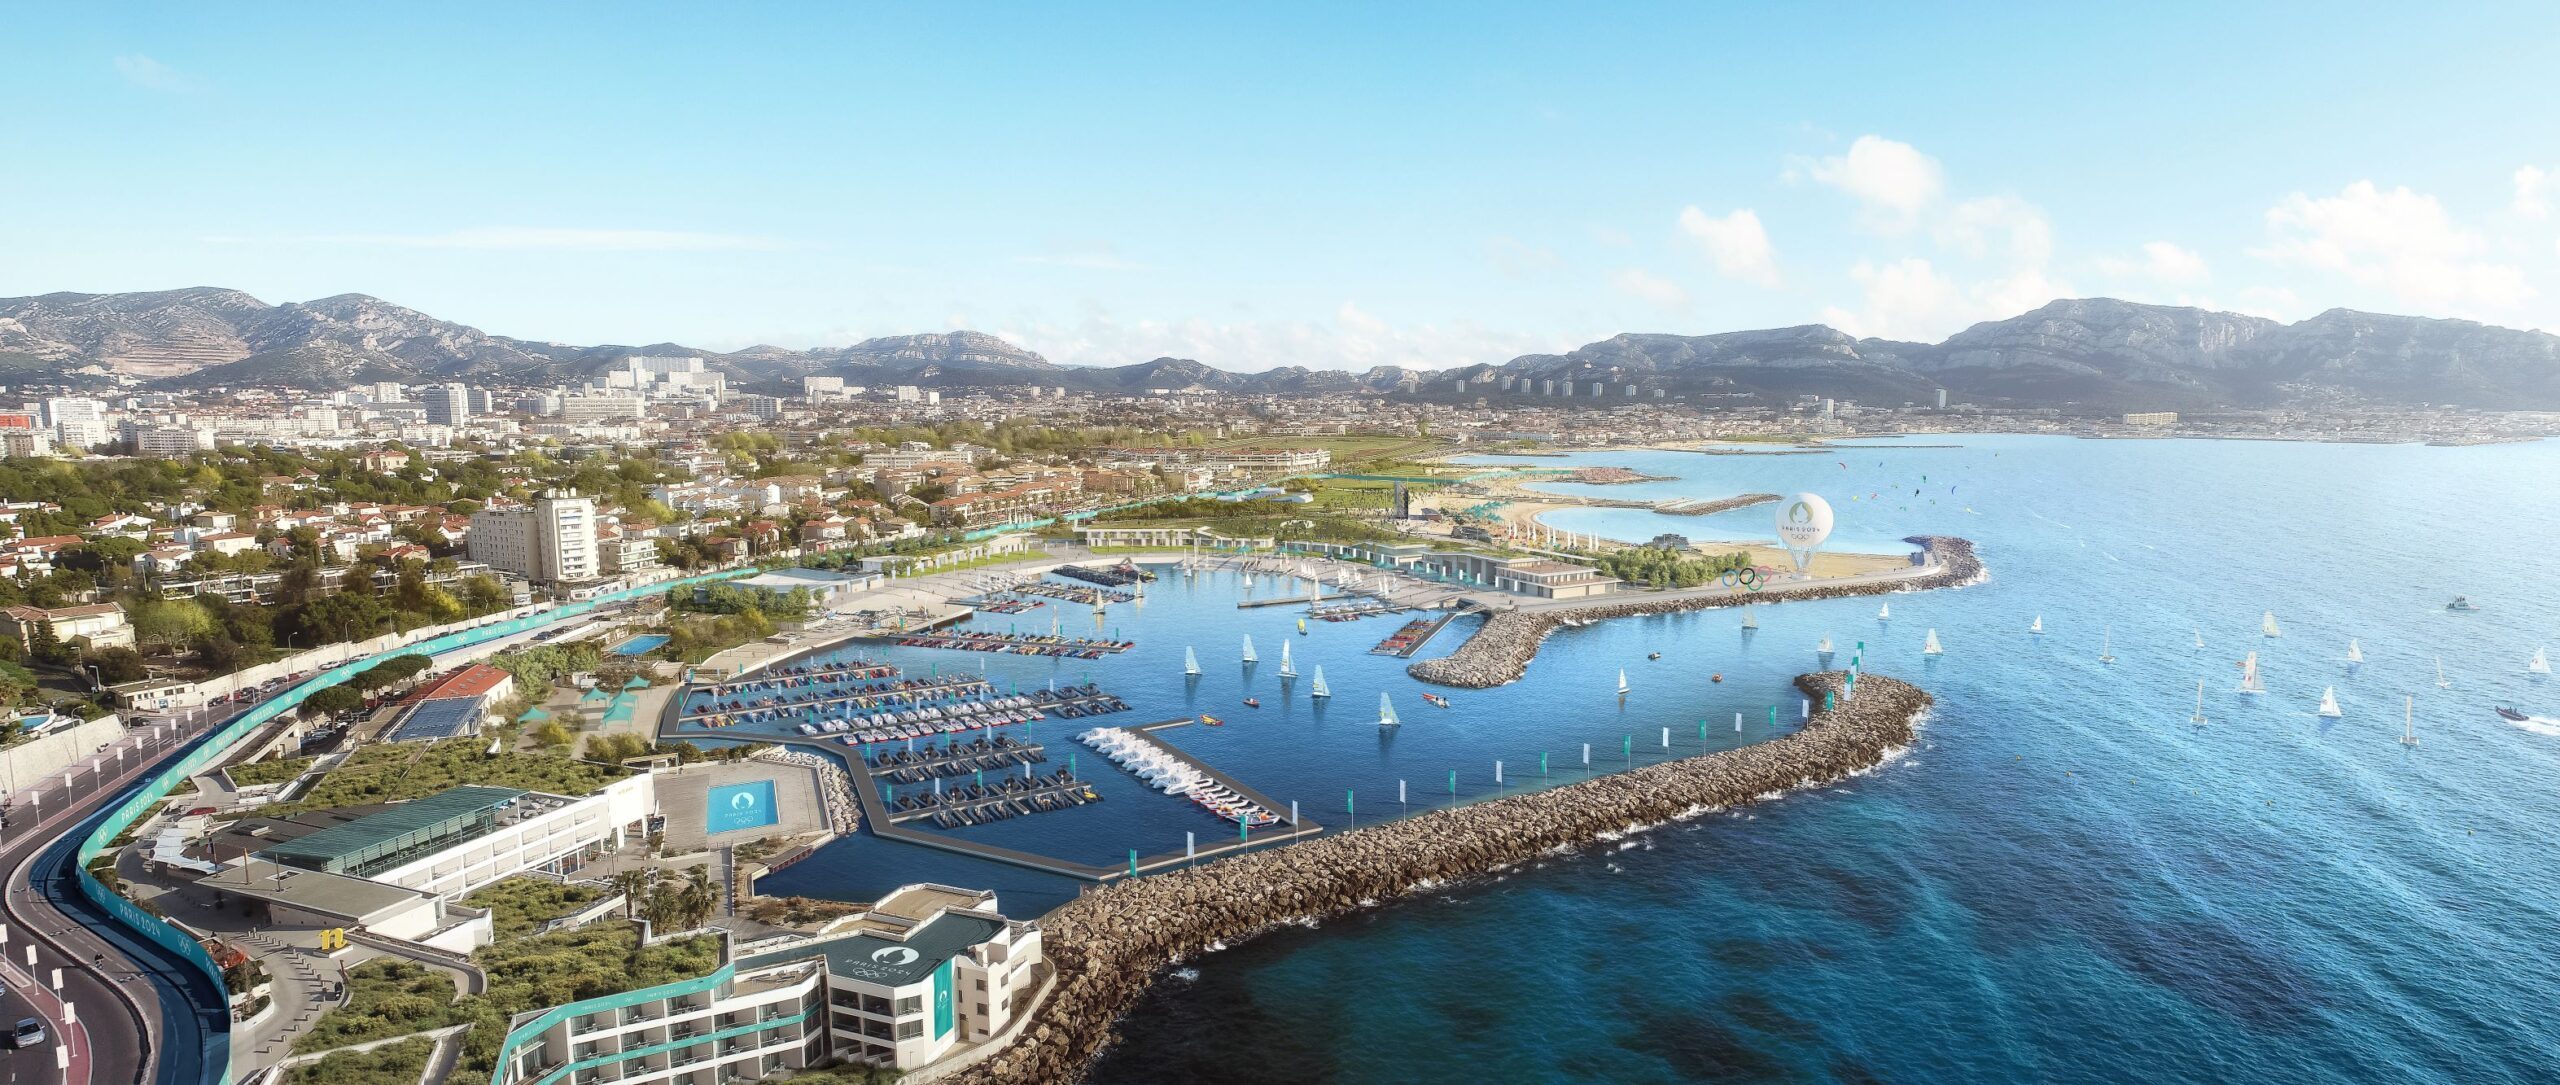 La Marina olympique, qui sera inaugurée ce mardi à Marseille, est prête à accueillir les athlètes du monde entier pour les épreuves de voile des JO de Paris 2024. DR